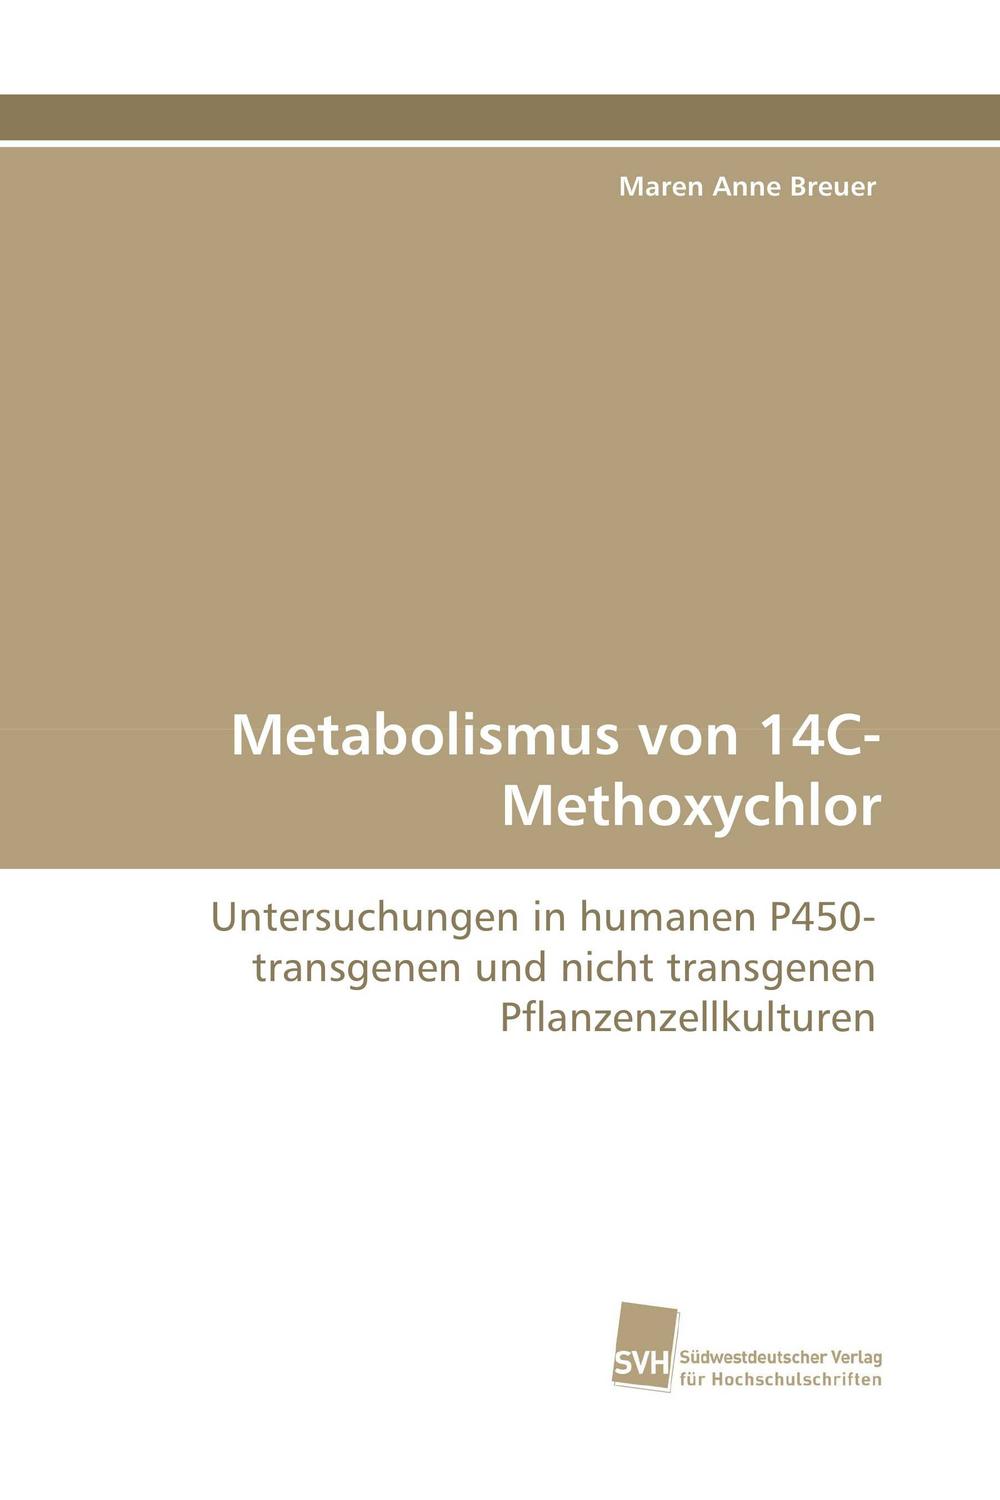 Metabolismus von 14C-Methoxychlor - Maren Anne Breuer